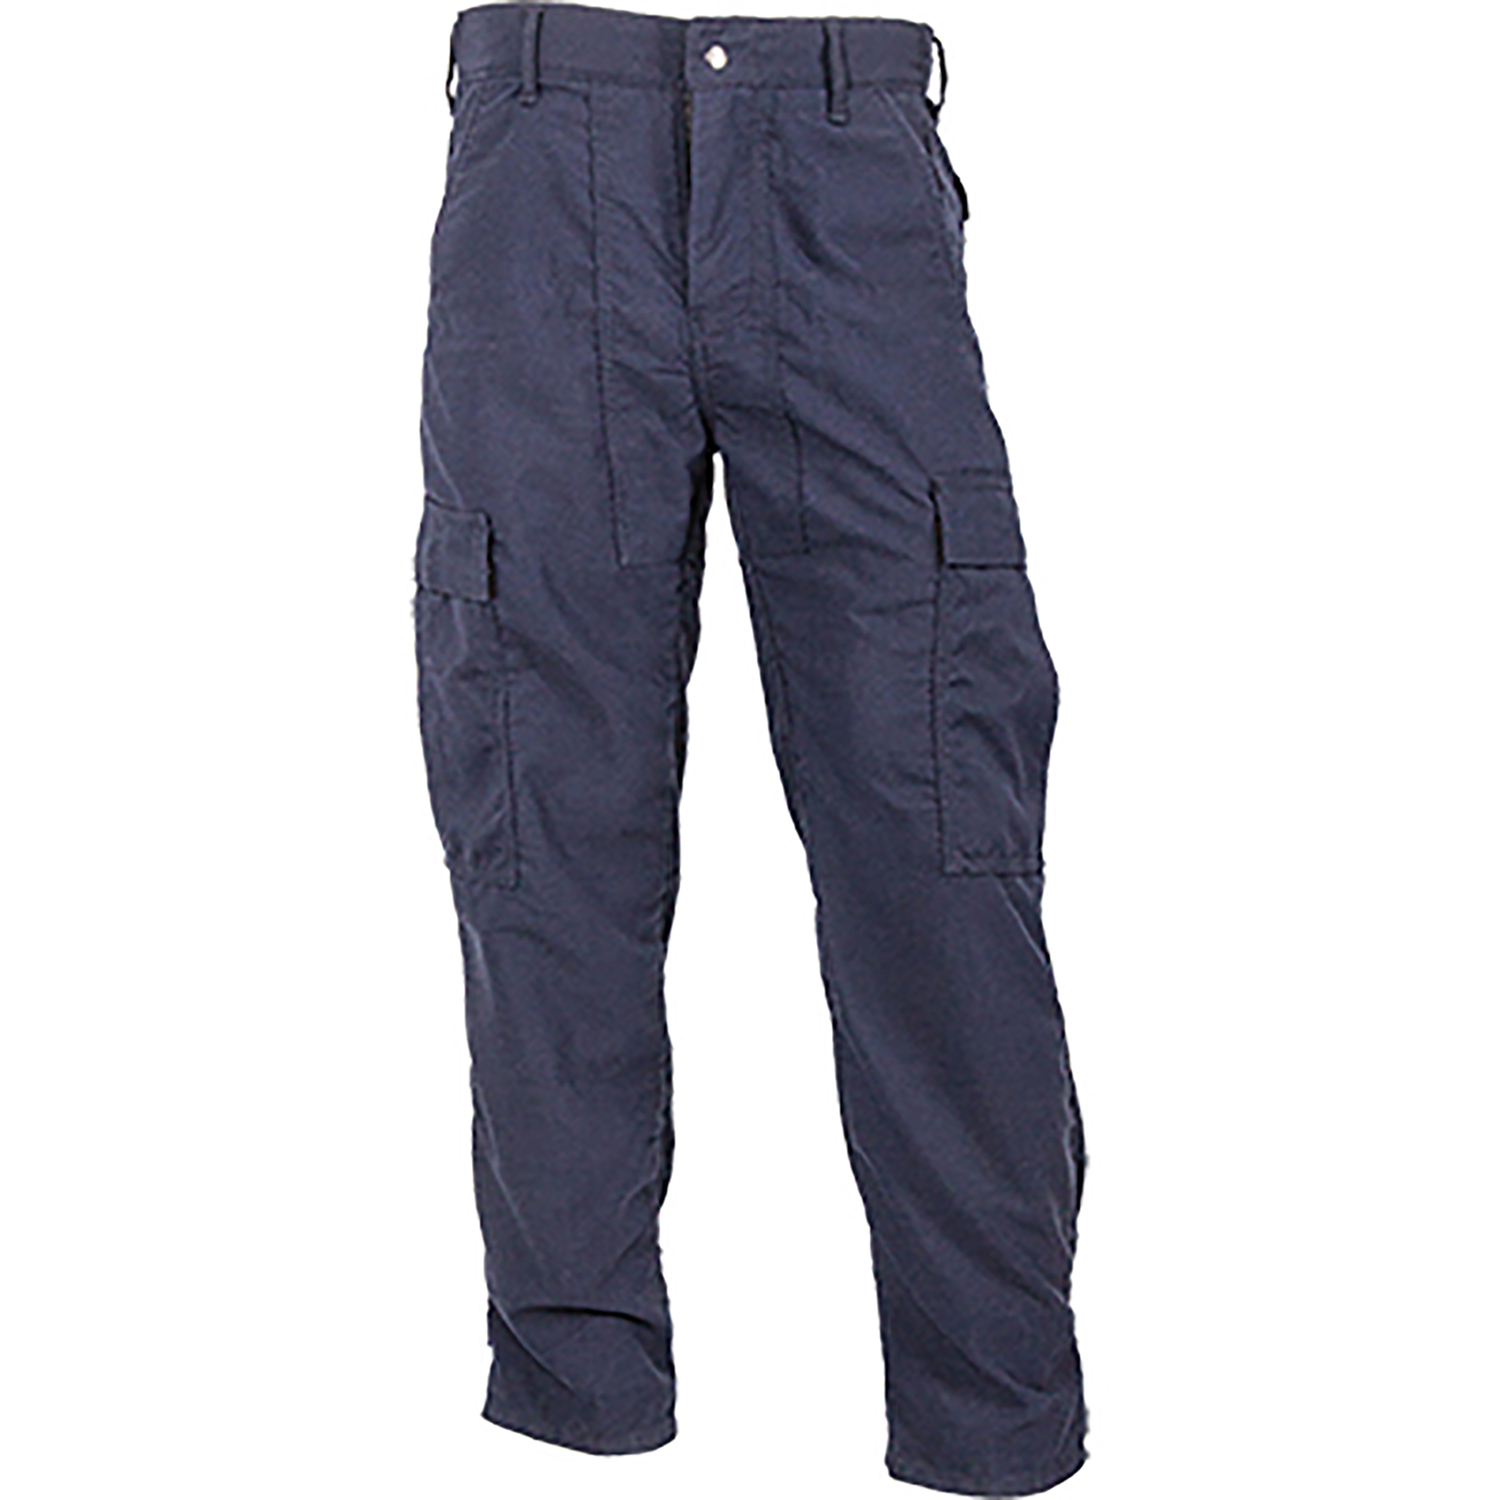 Stationwear/EMS Pants